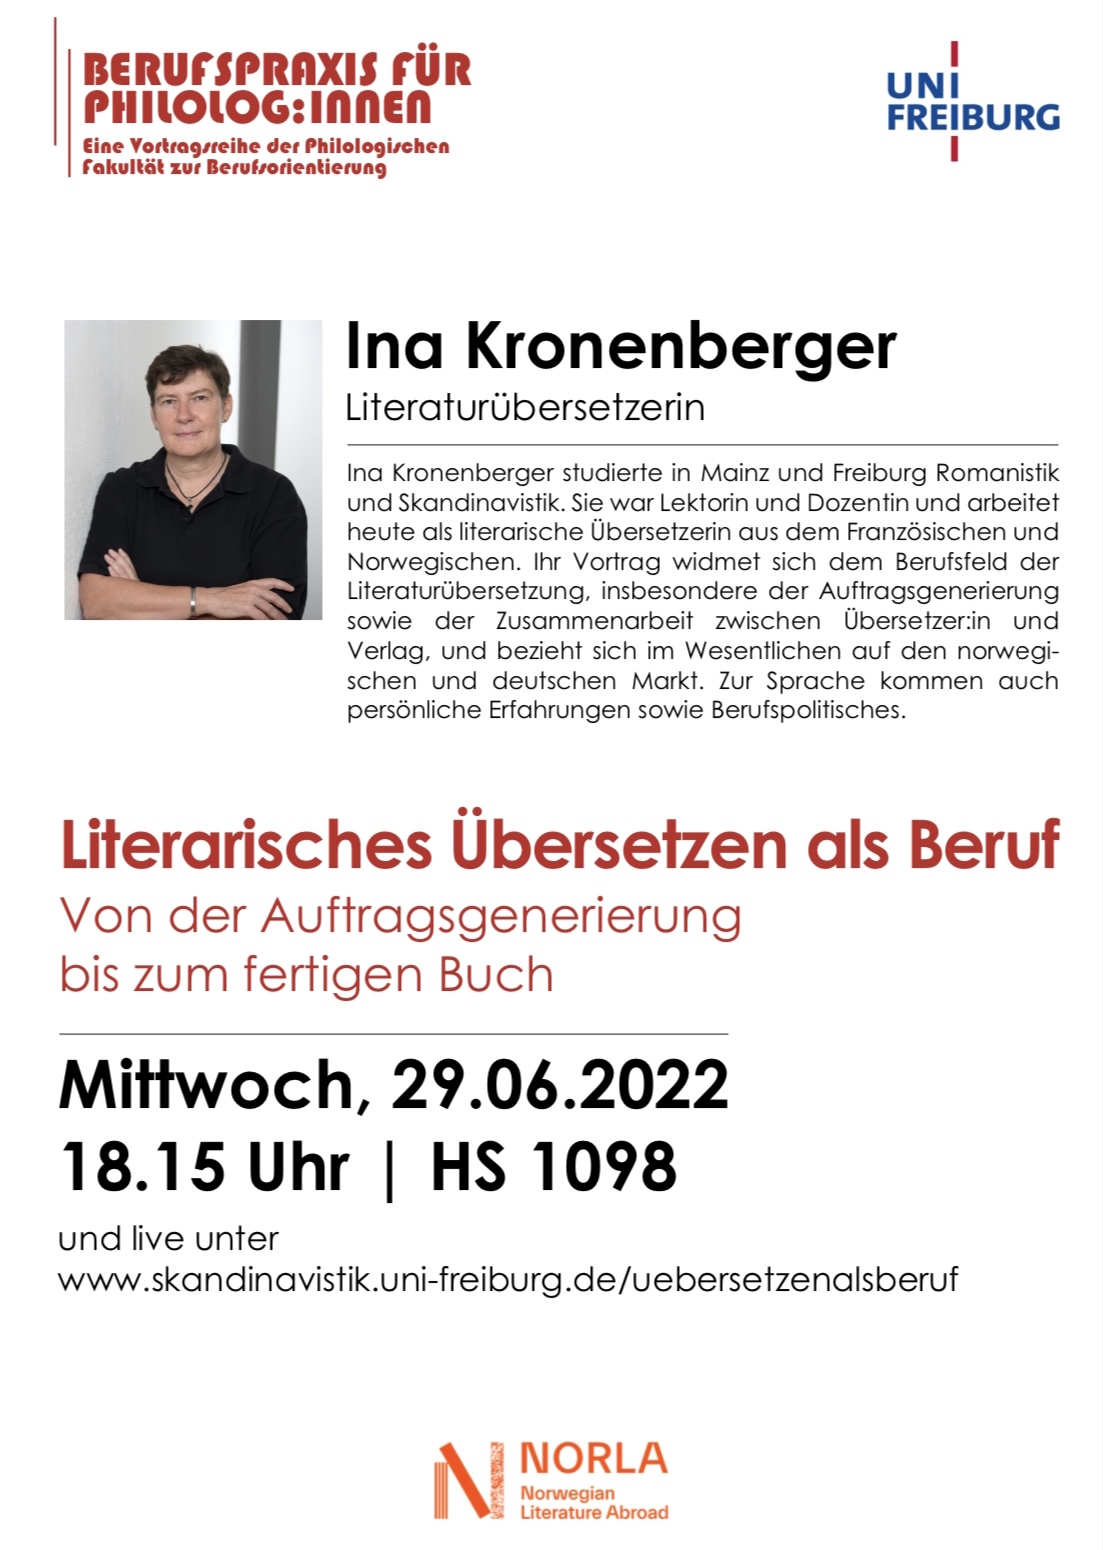 Literarisches Übersetzen als Beruf. mit Ina Kronenberger am 29. Juni um 18 Uhr 